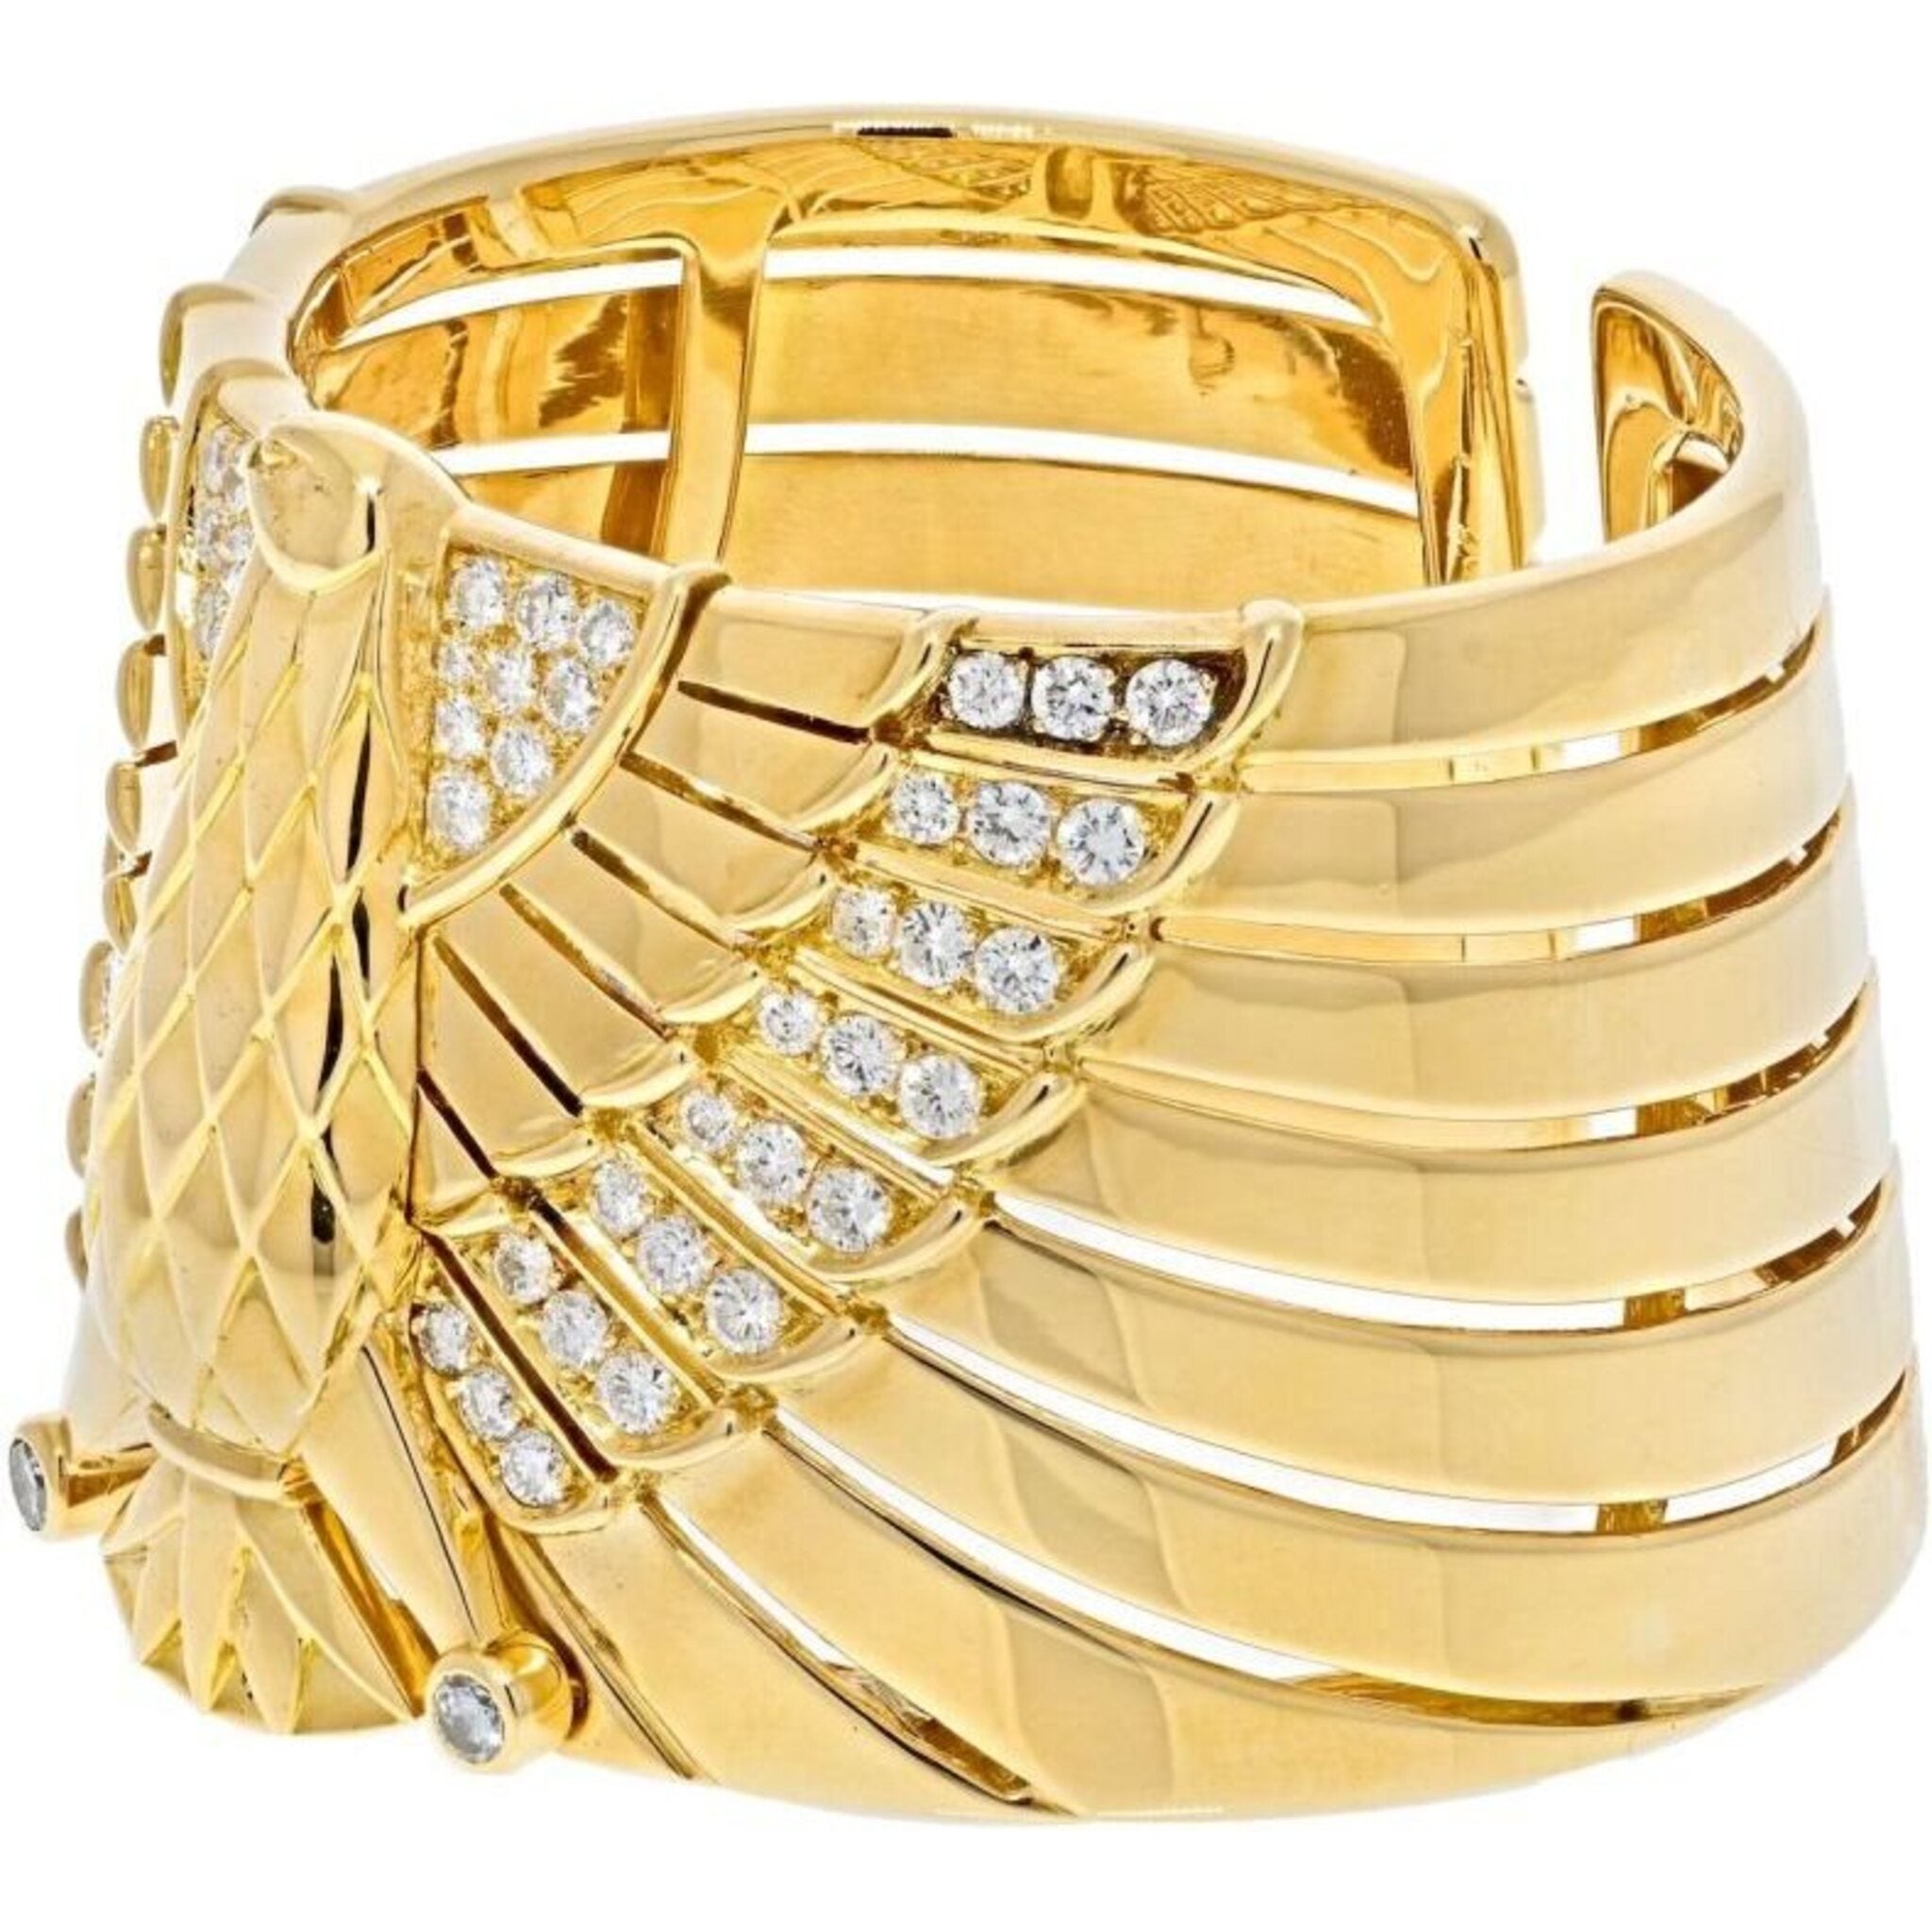 gold Cartier style stainless steel bracelet - Jewenoir